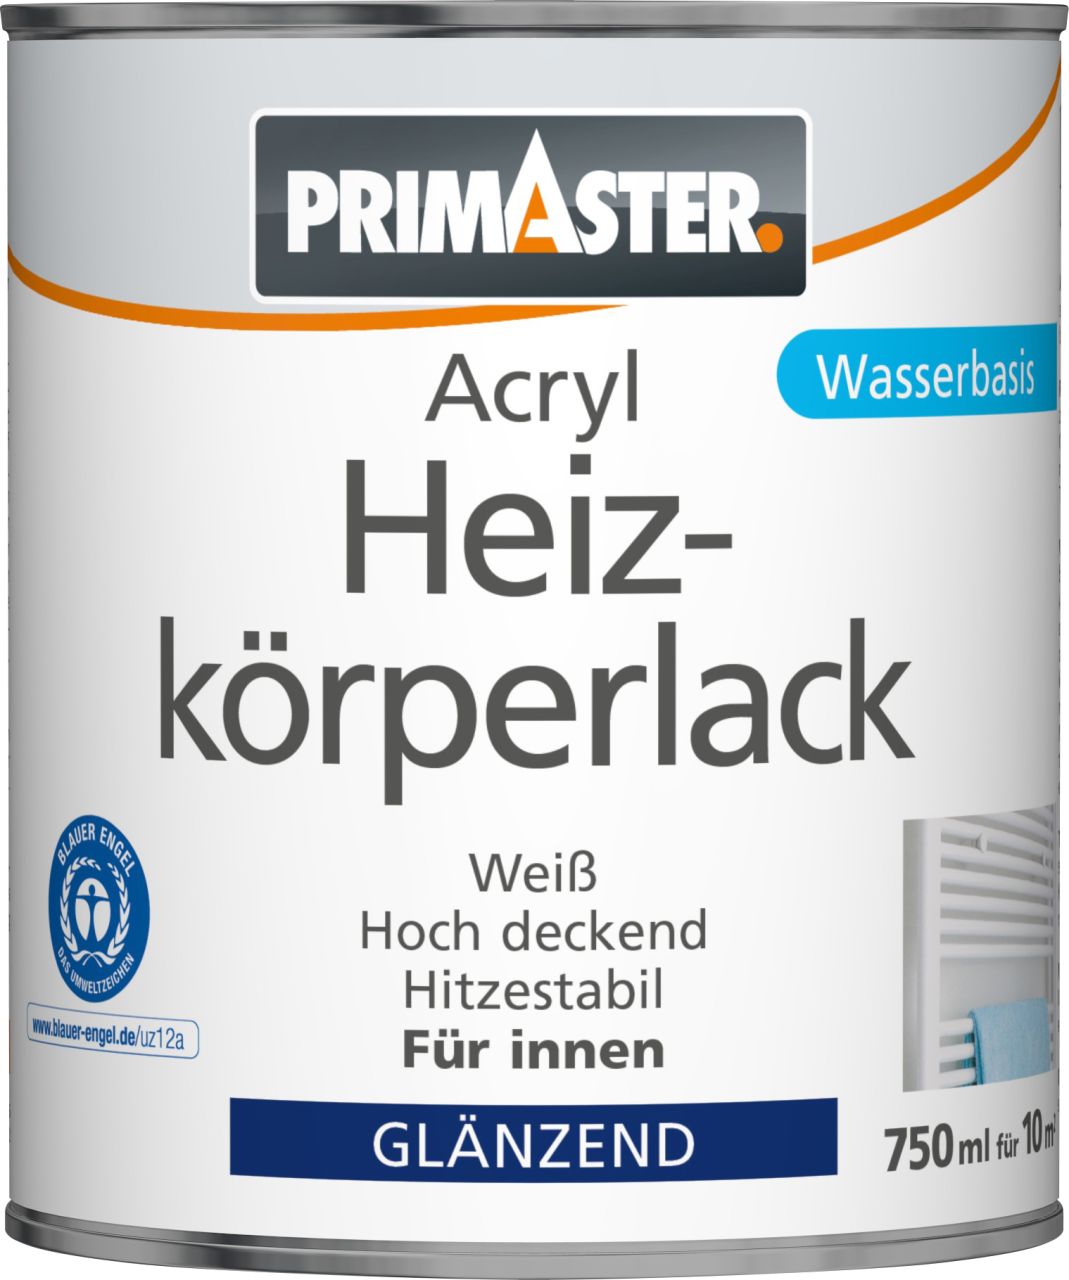 Primaster Acryl Heizkörperlack 750 ml weiß glänzend von Primaster